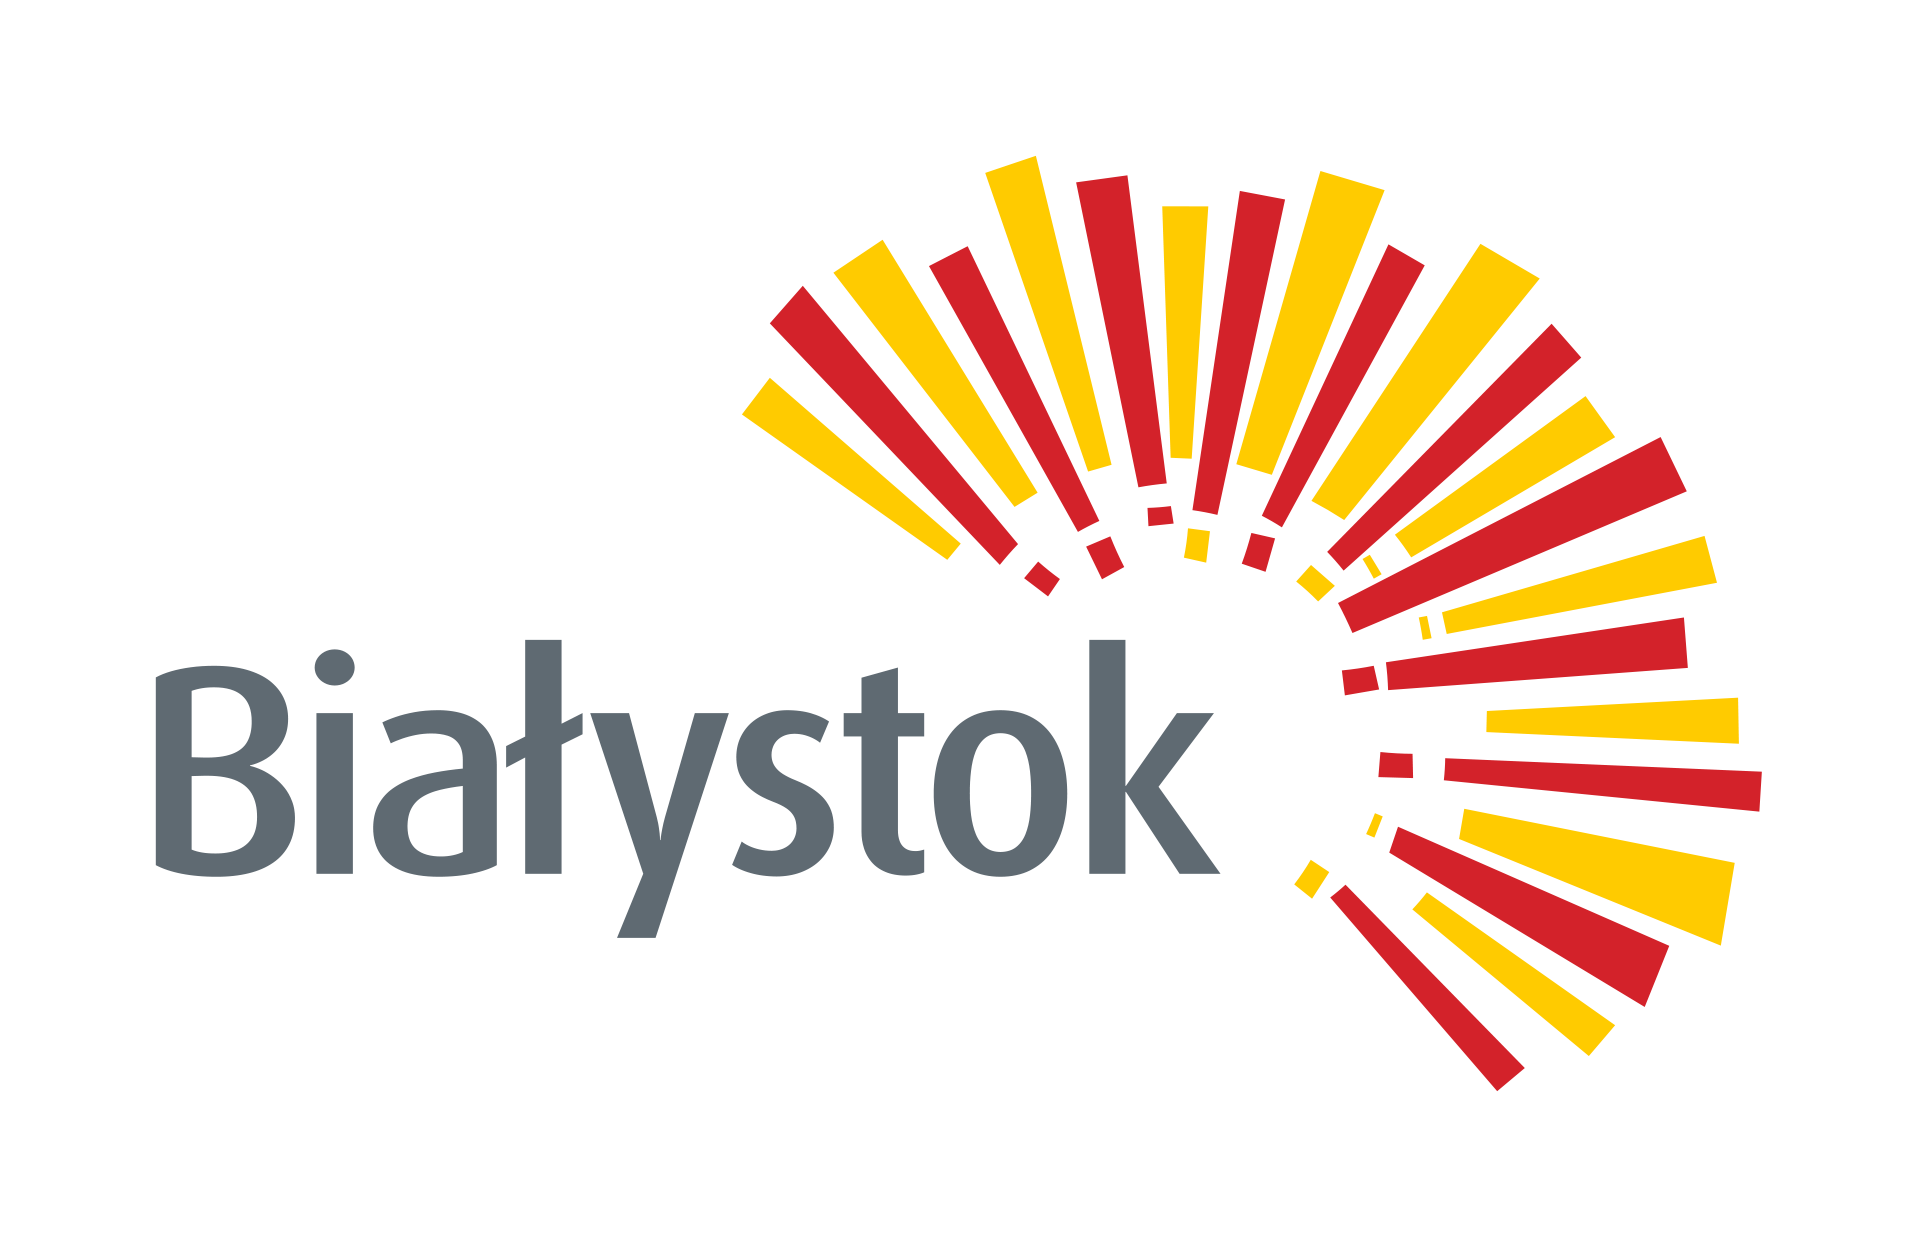 Bialystok logo 2020 PL RGB